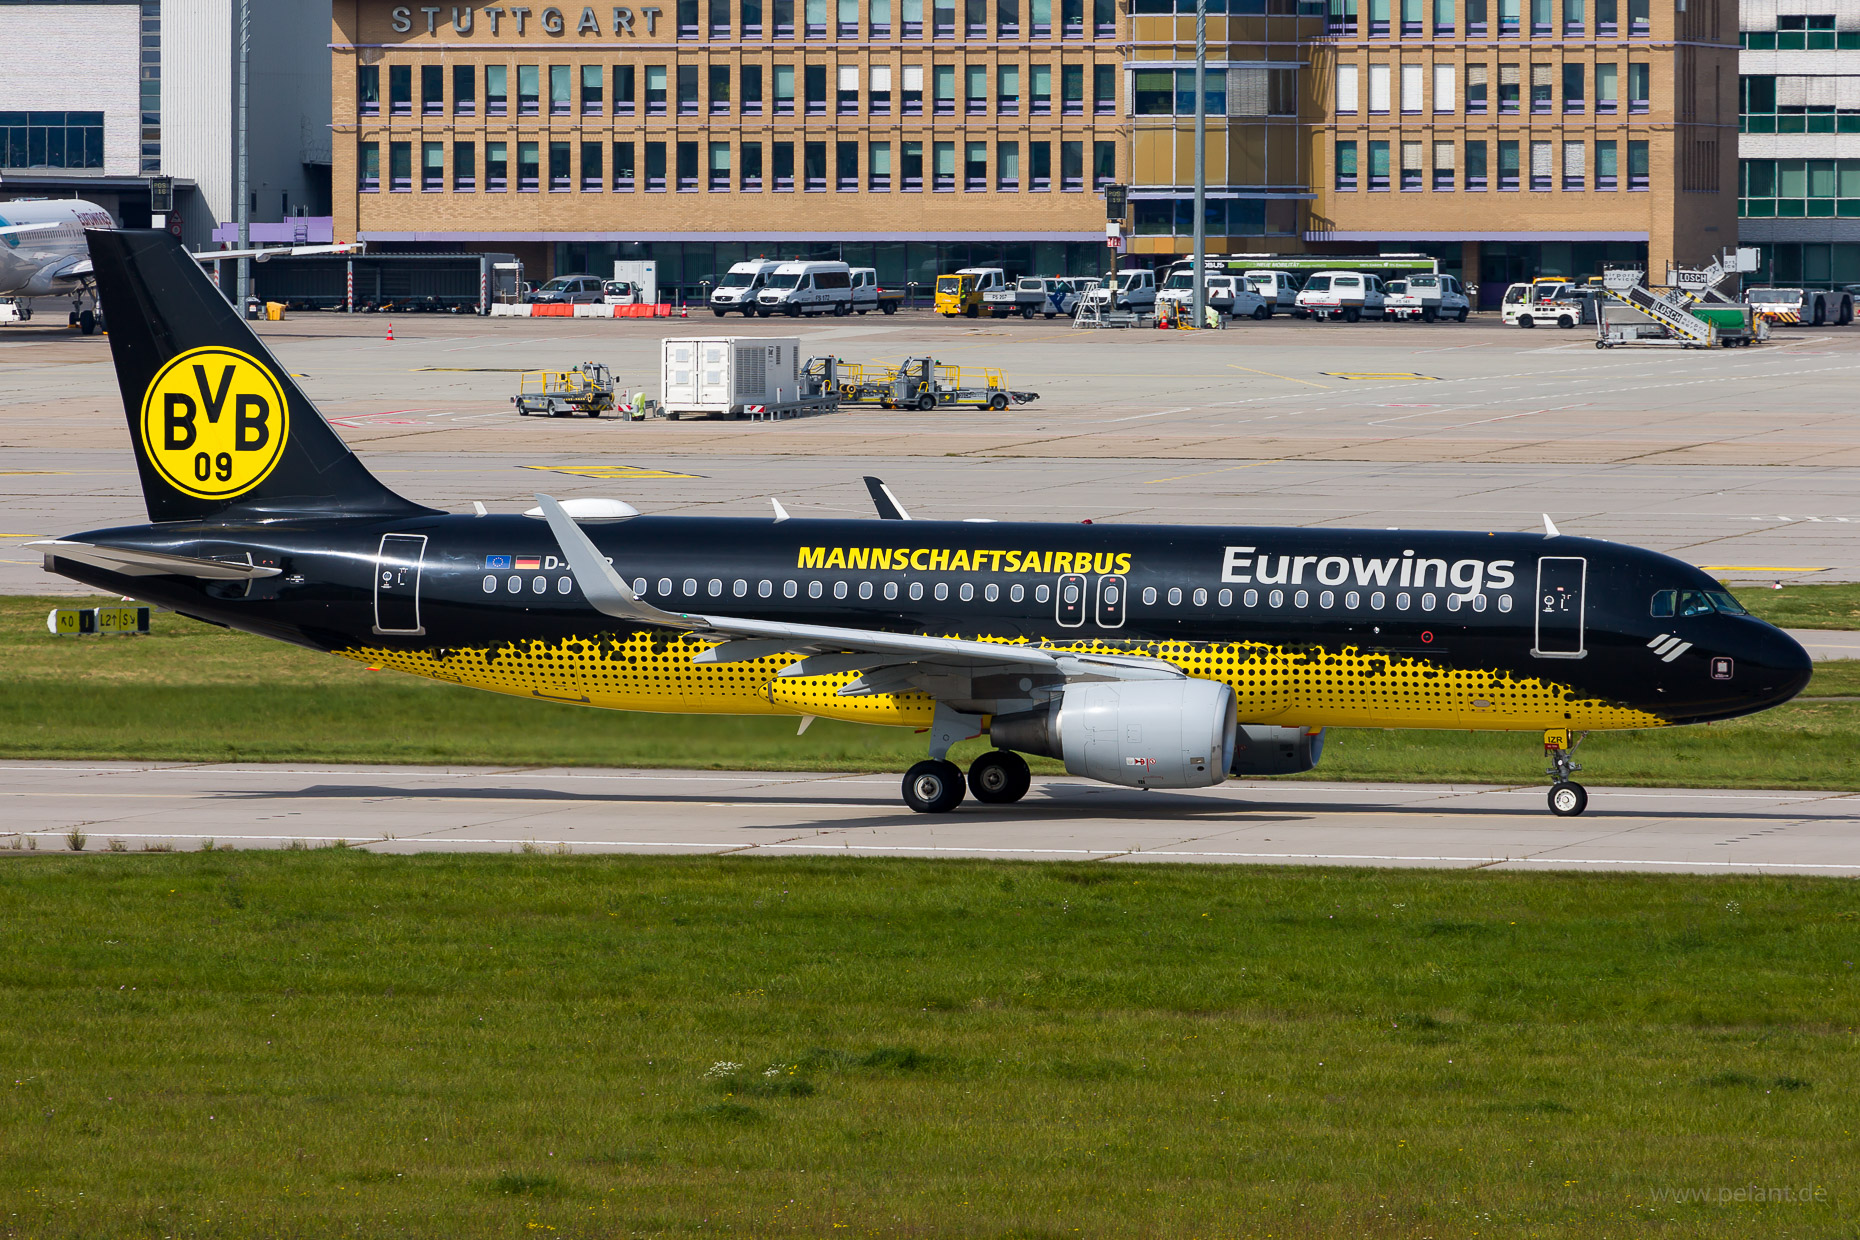 D-AIZR Eurowings Airbus A320-214 in Stuttgart / STR (BVB Mannschaftsairbus Livery)